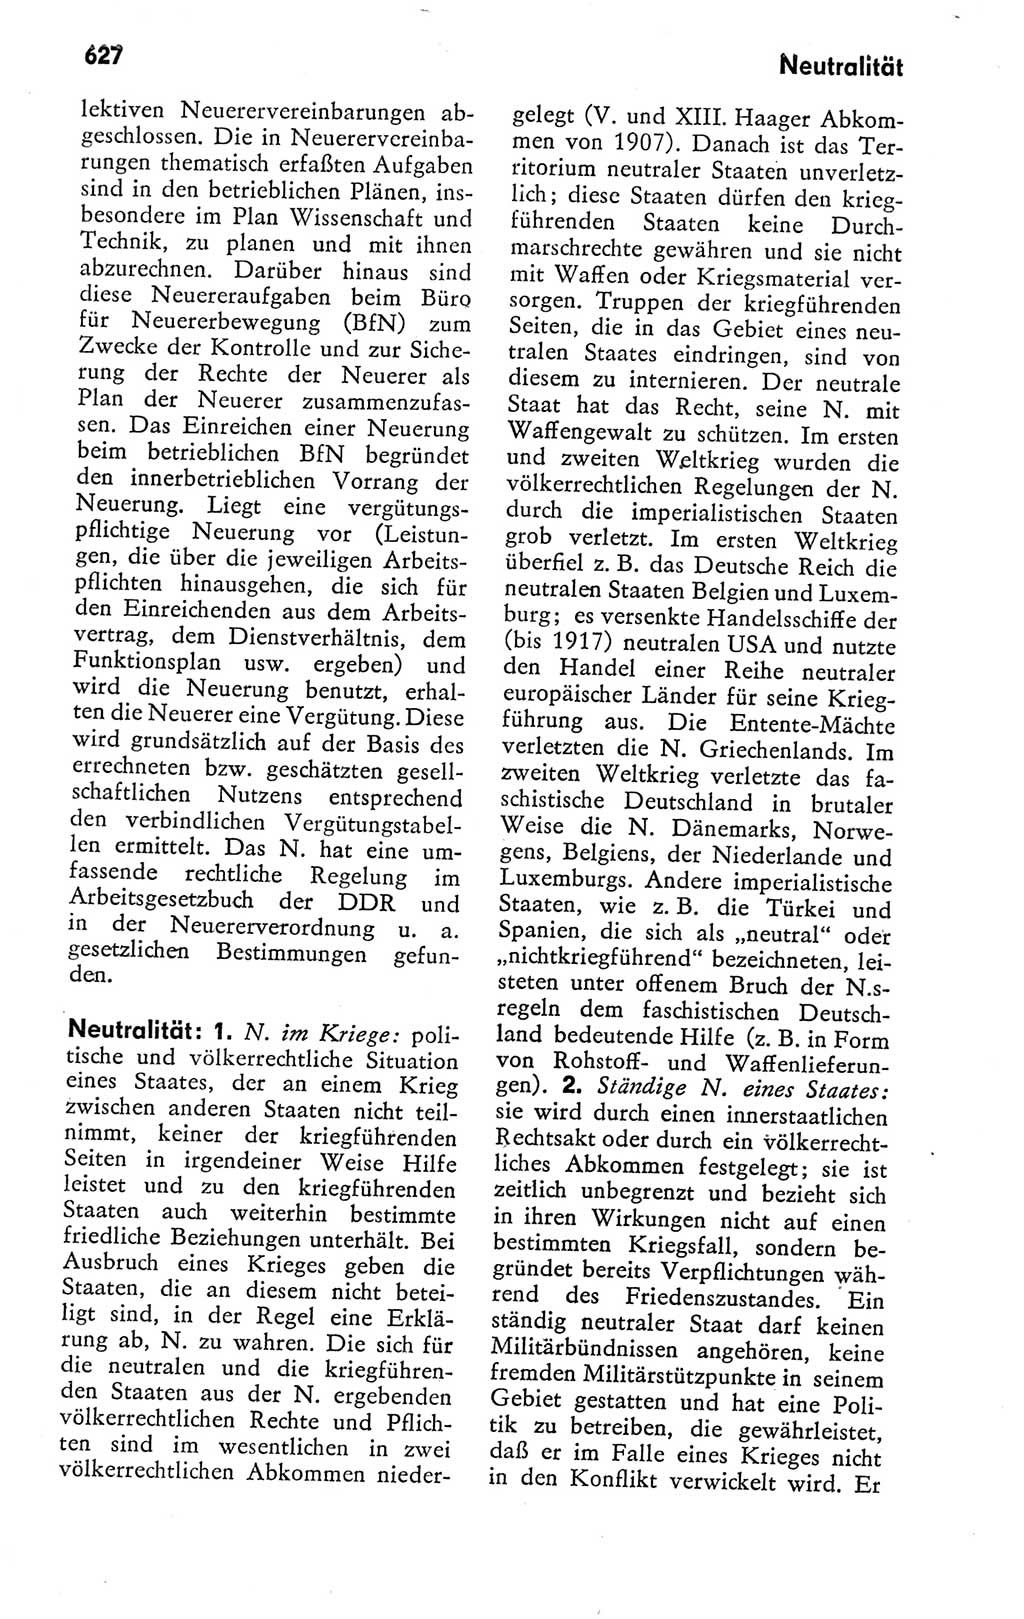 Kleines politisches Wörterbuch [Deutsche Demokratische Republik (DDR)] 1978, Seite 627 (Kl. pol. Wb. DDR 1978, S. 627)